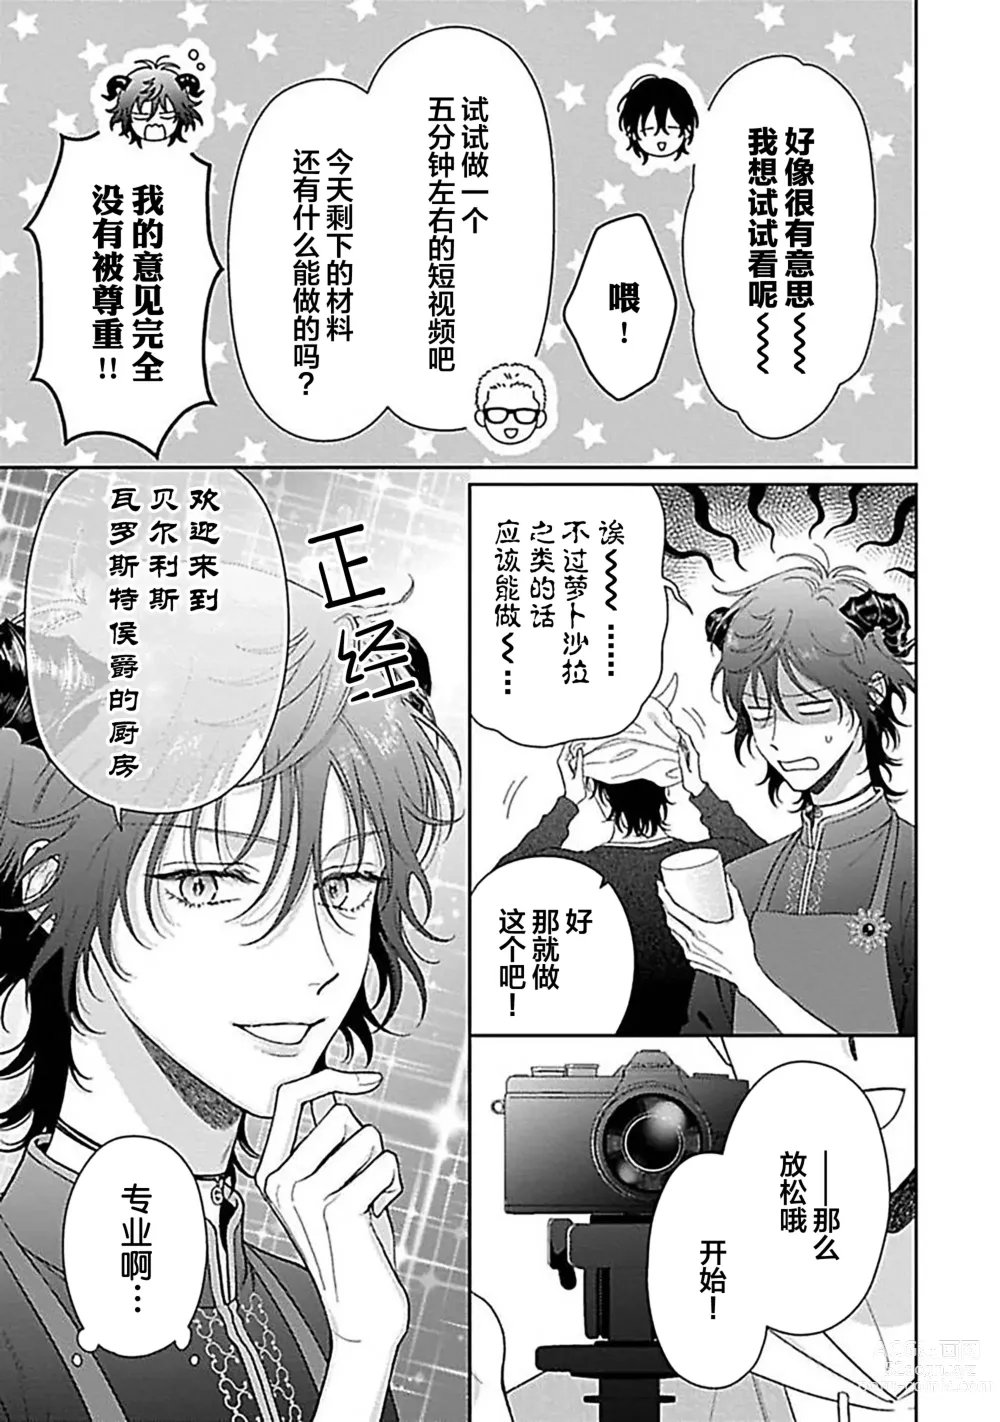 Page 231 of manga 甜咸交织的每一天